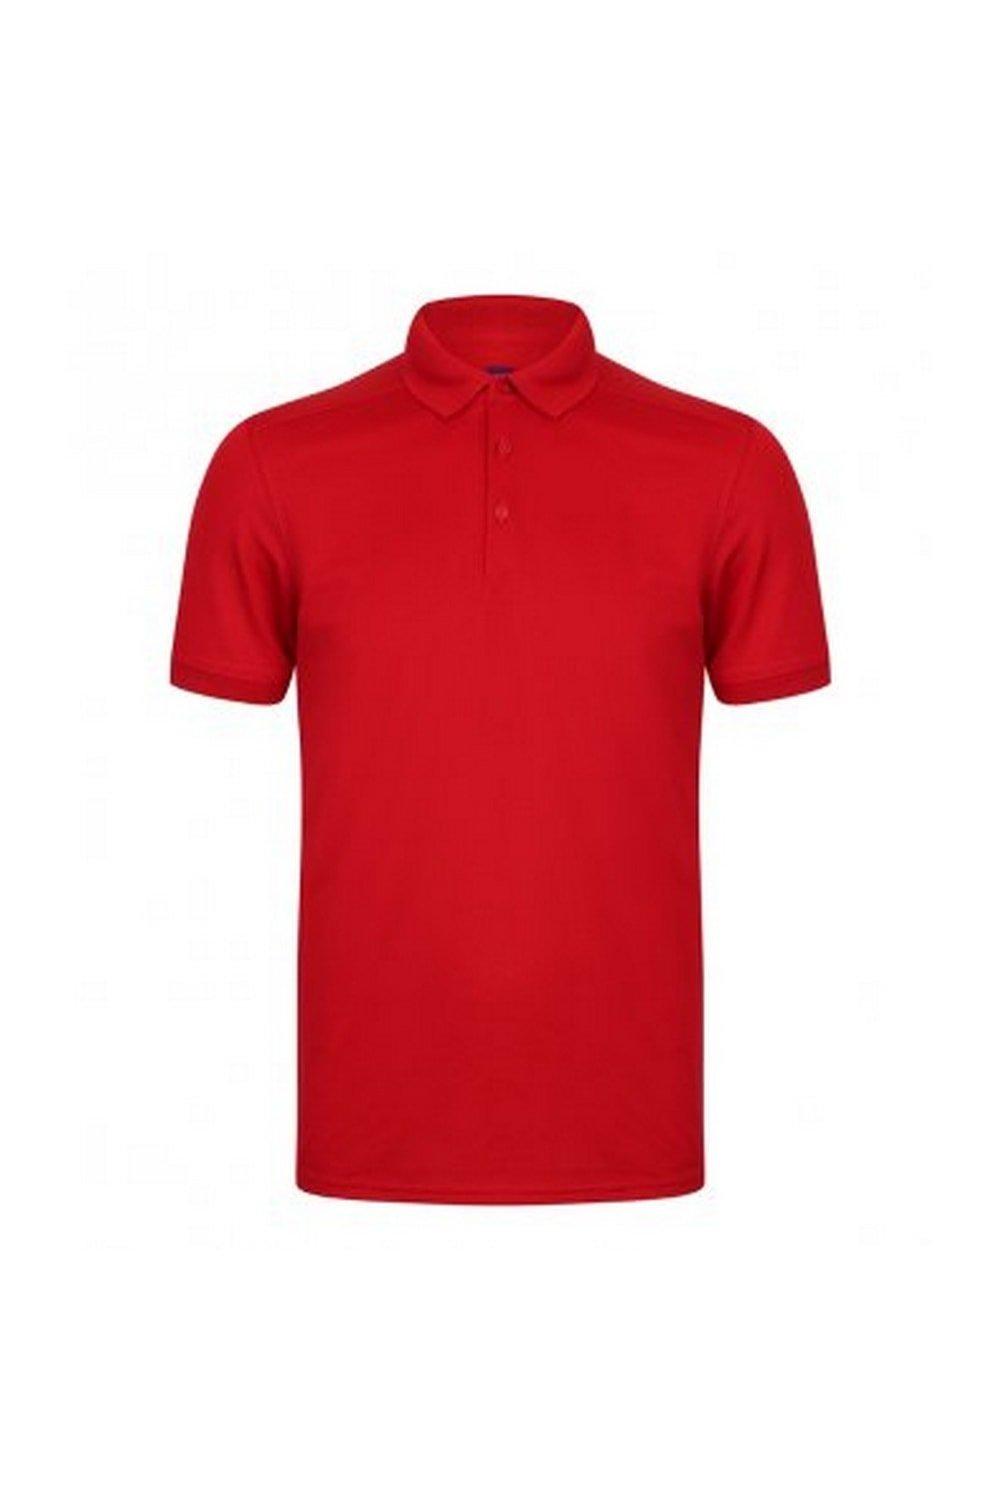 цена Рубашка поло из пике стрейч из микрофайна Henbury, красный